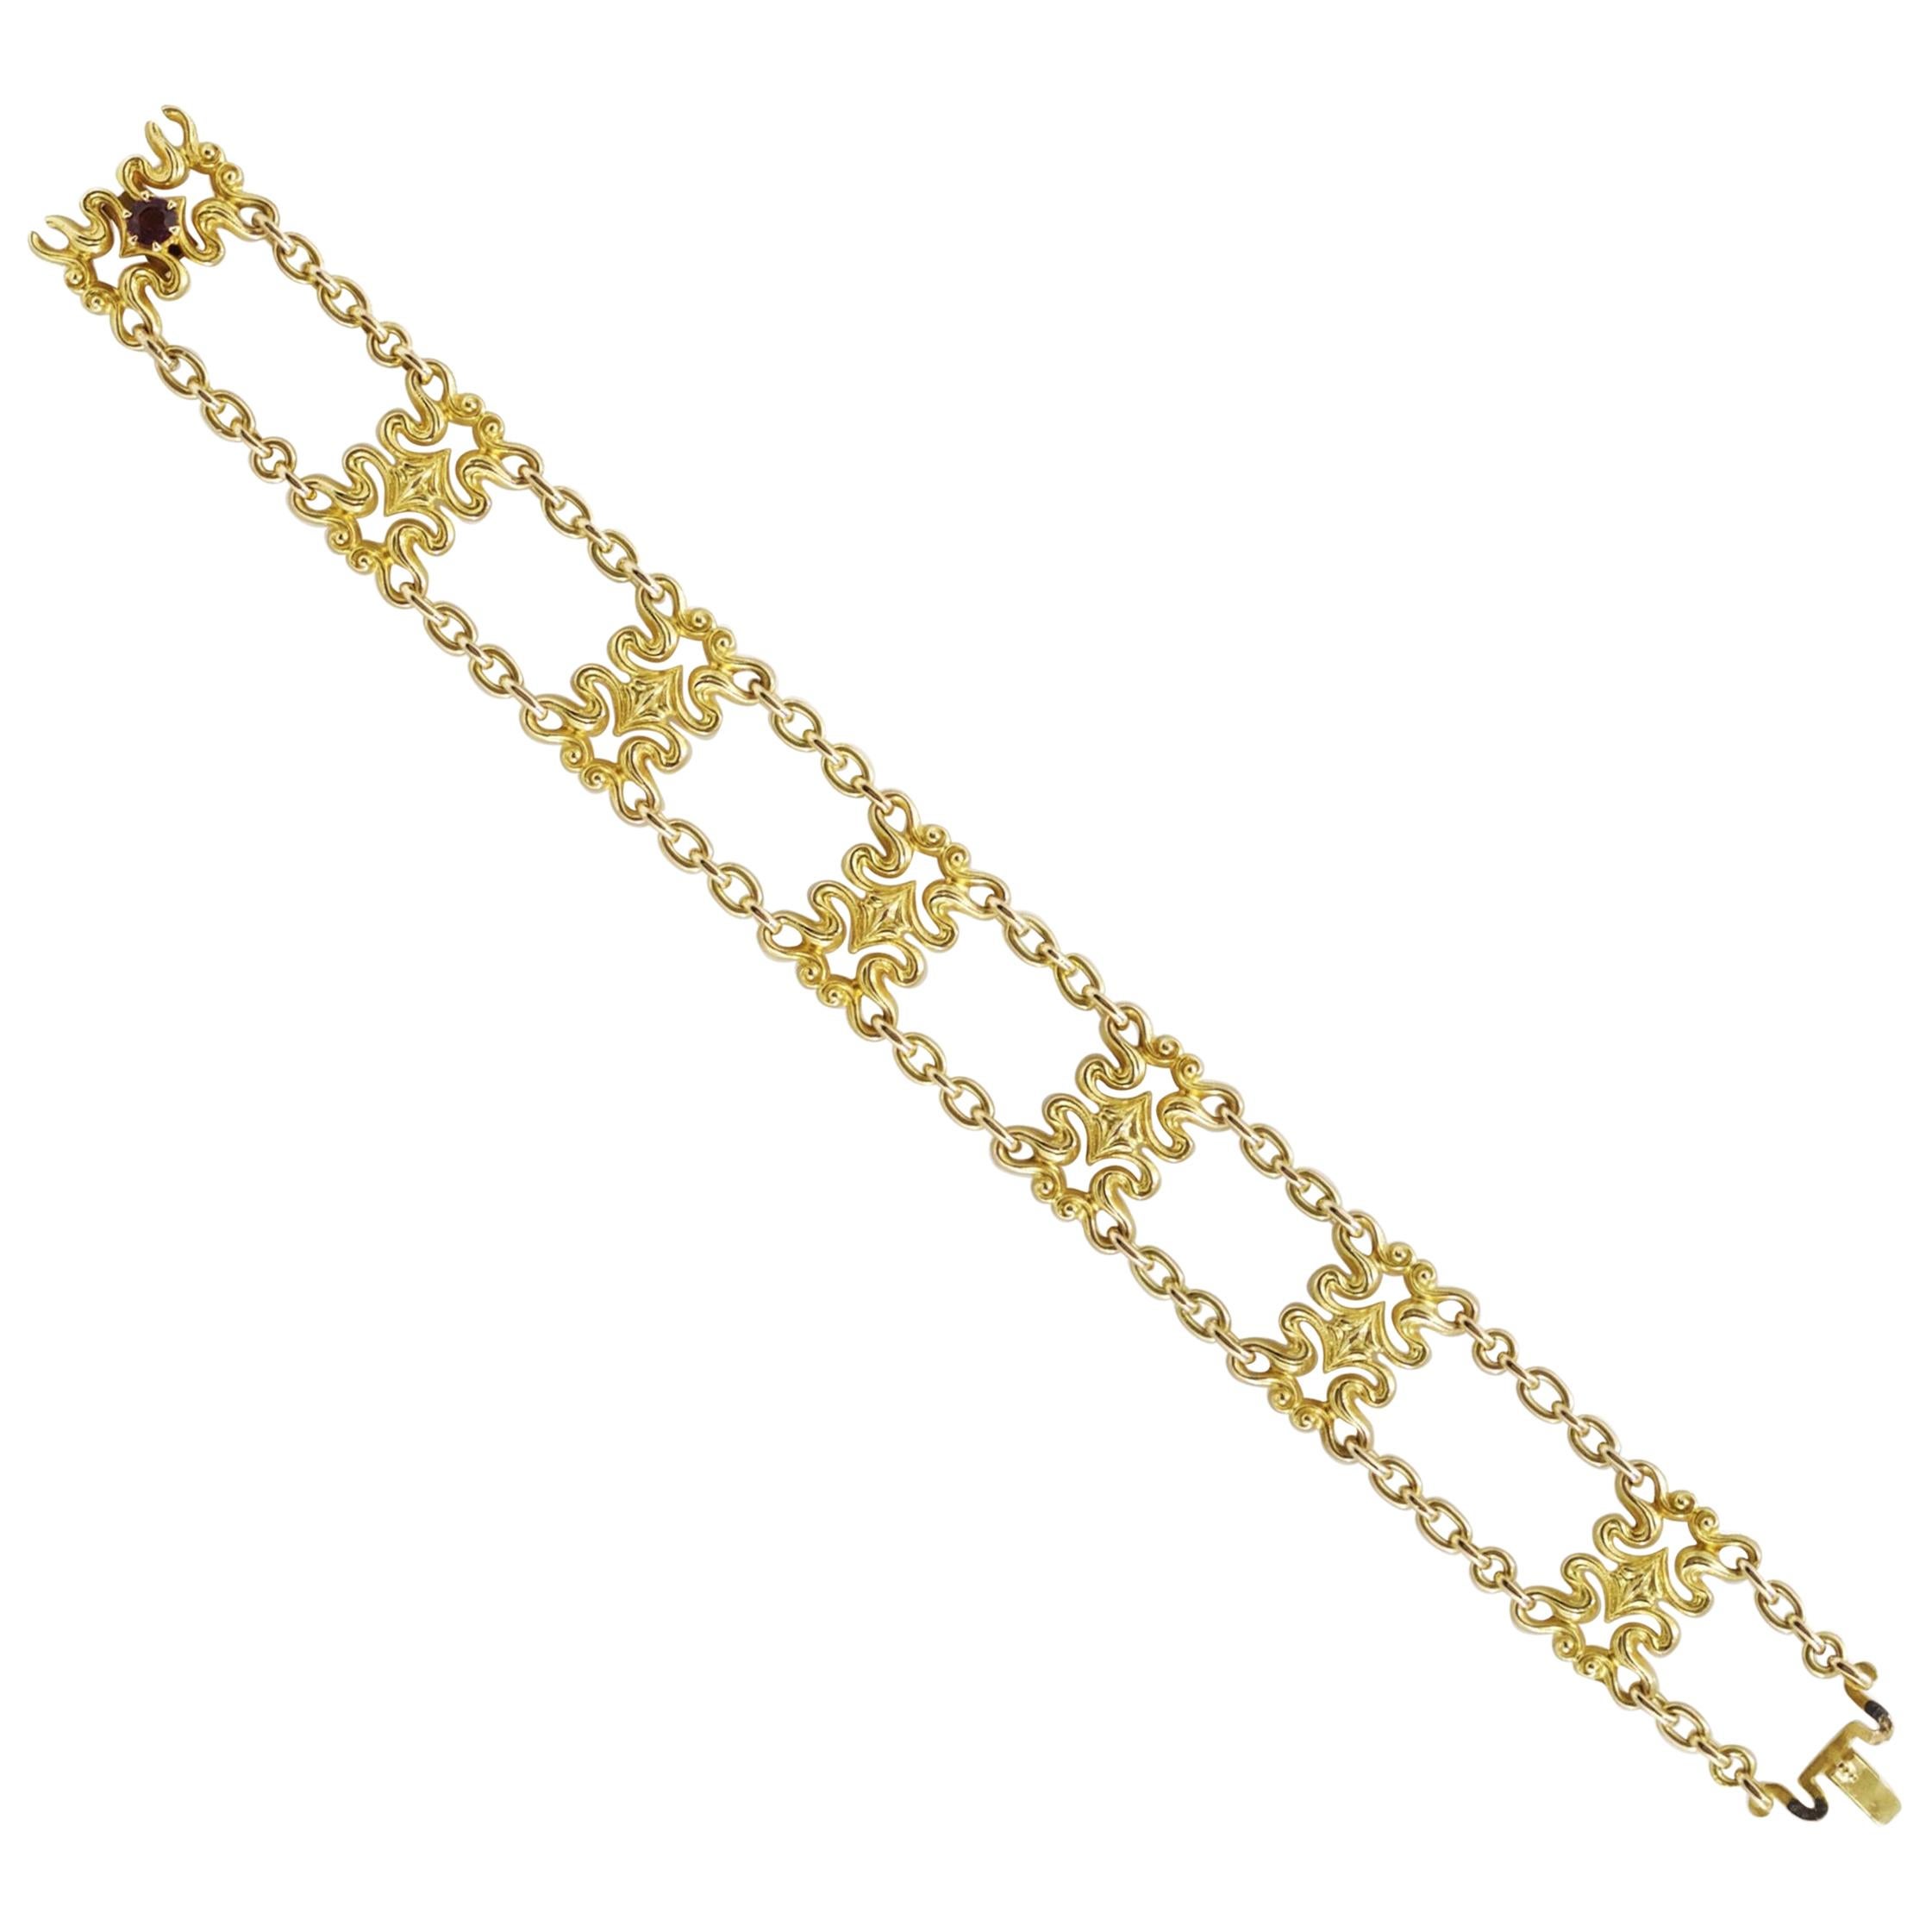 Art Nouveau 14K Yellow Gold Strap Bracelet by Sloan & Co.